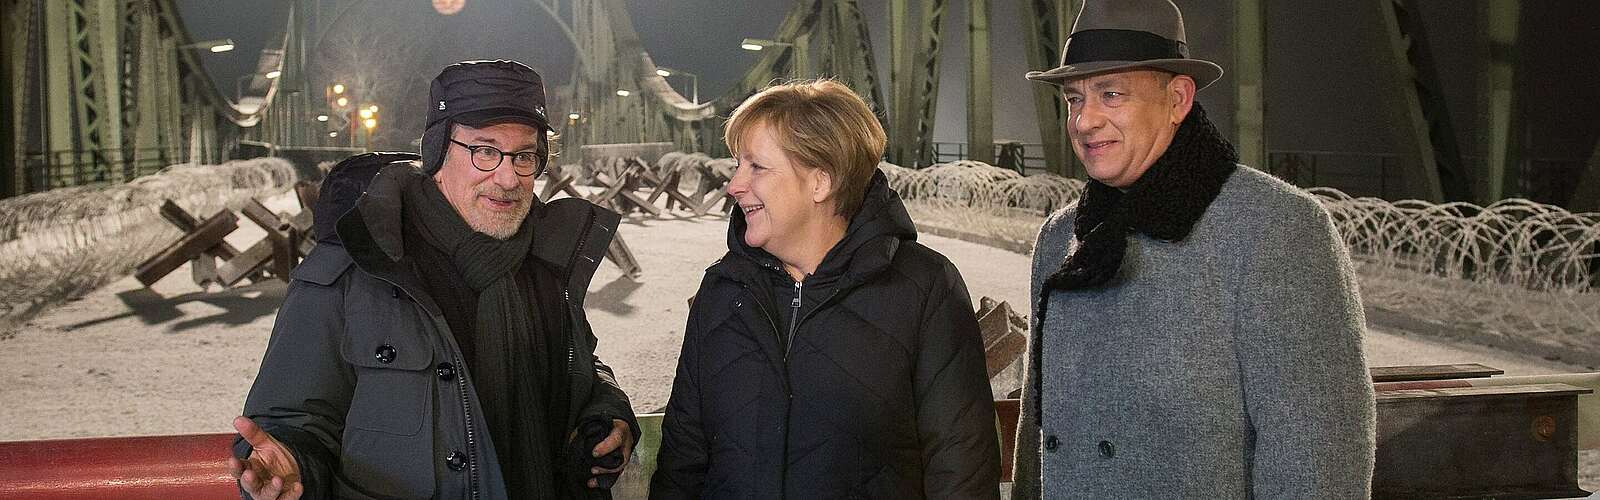 Angela Merkel besucht Spielberg und Tom Hanks beim Dreh,
        
    

        
            Foto: Bundesregierung/Berg